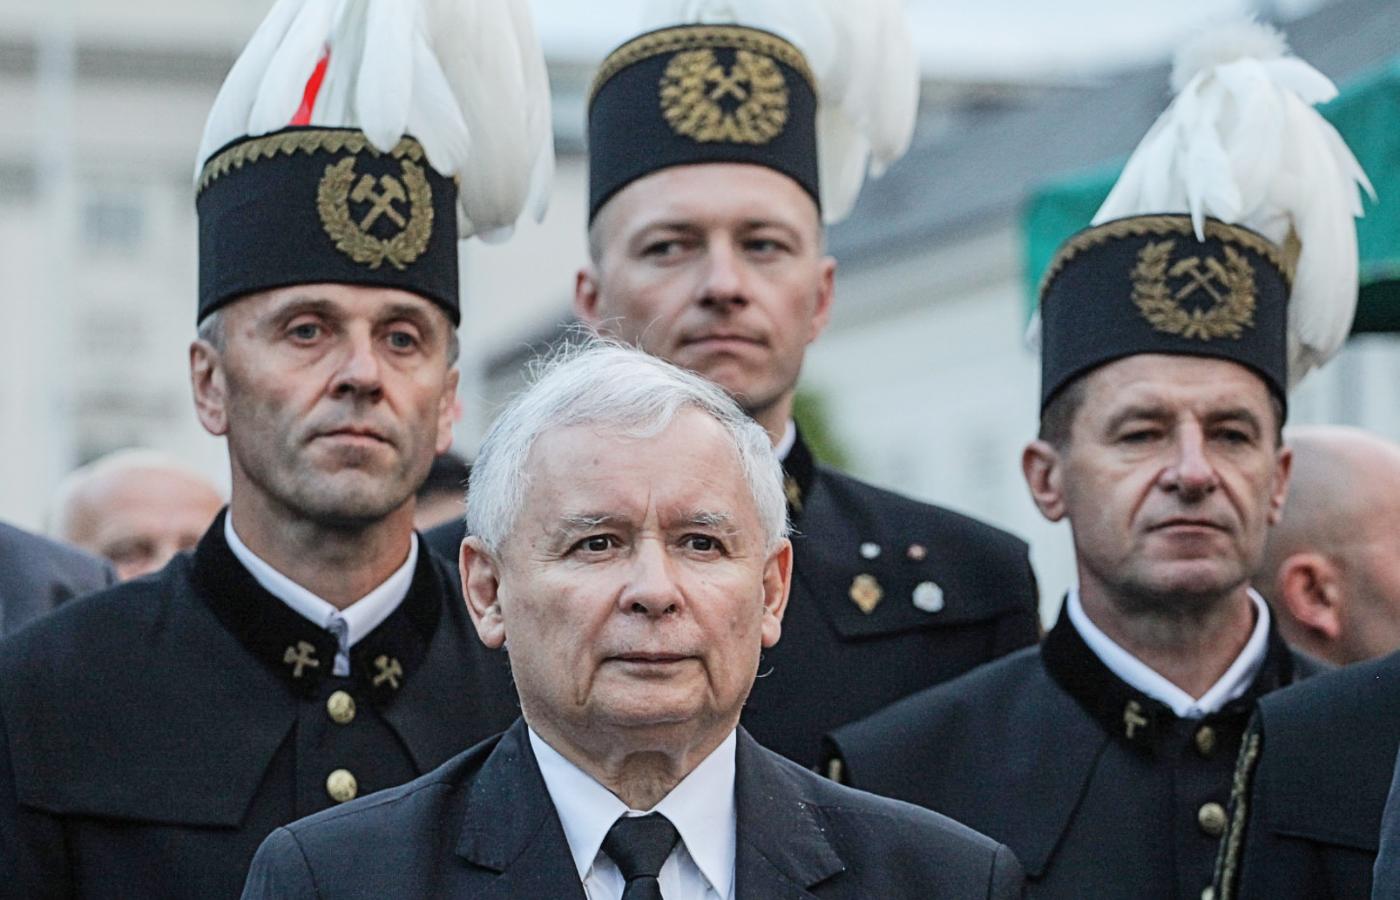 Jarosław Kaczyński w otoczeniu górników podczas miesięcznicy smoleńskiej, lipiec 2014 r.